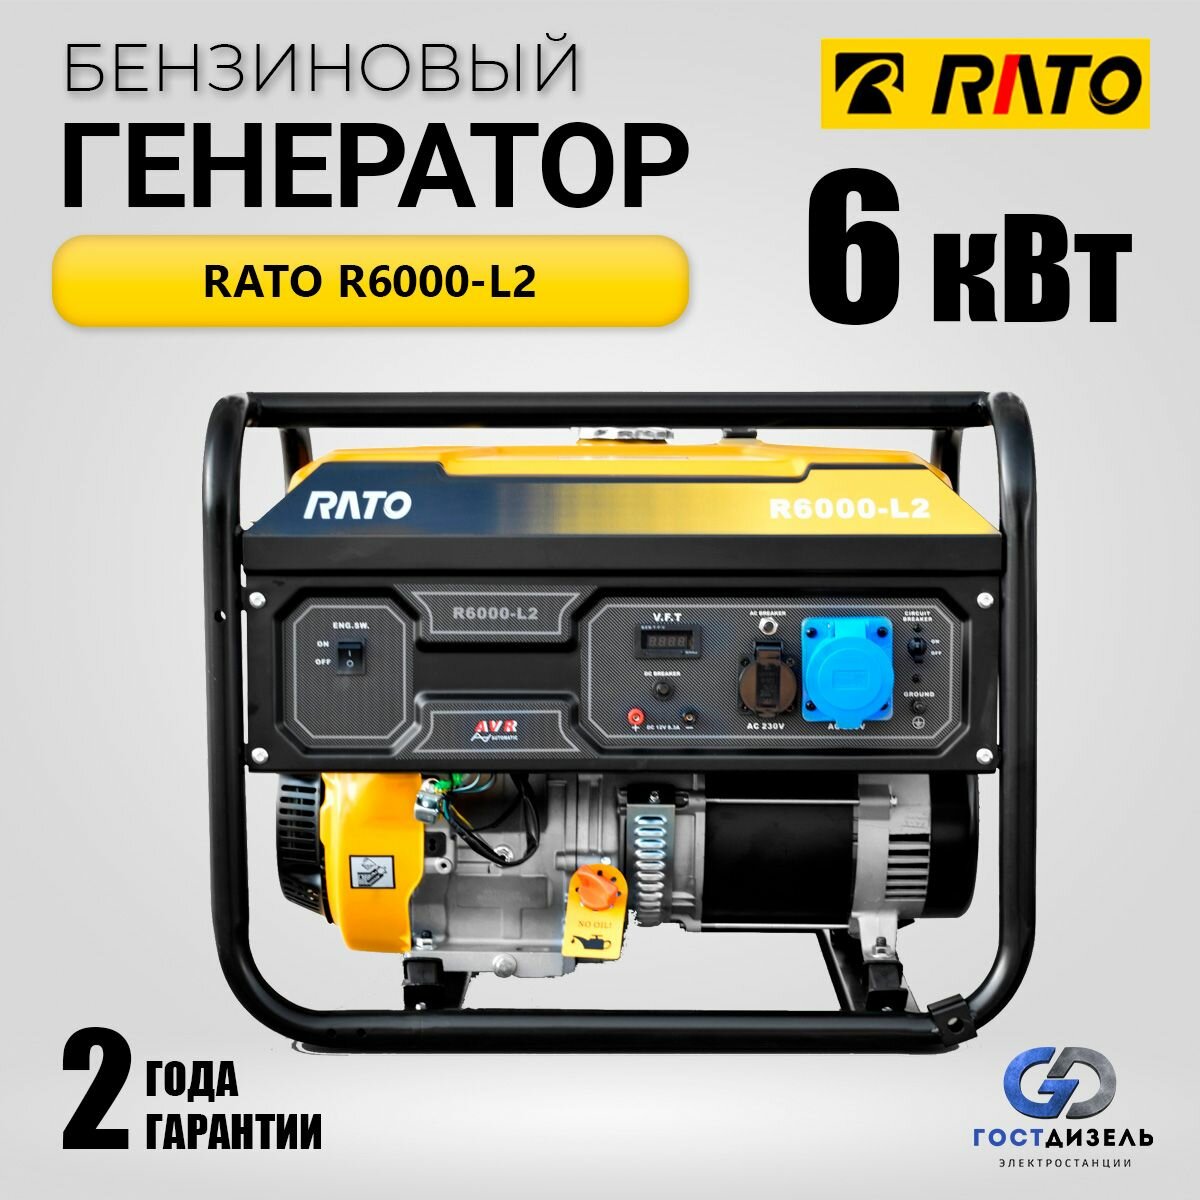 Генератор бензиновый Rato R6000-L2 (6кВт, 230В) Мобильная электростанция бензиновая. Вес 87кг - фотография № 1